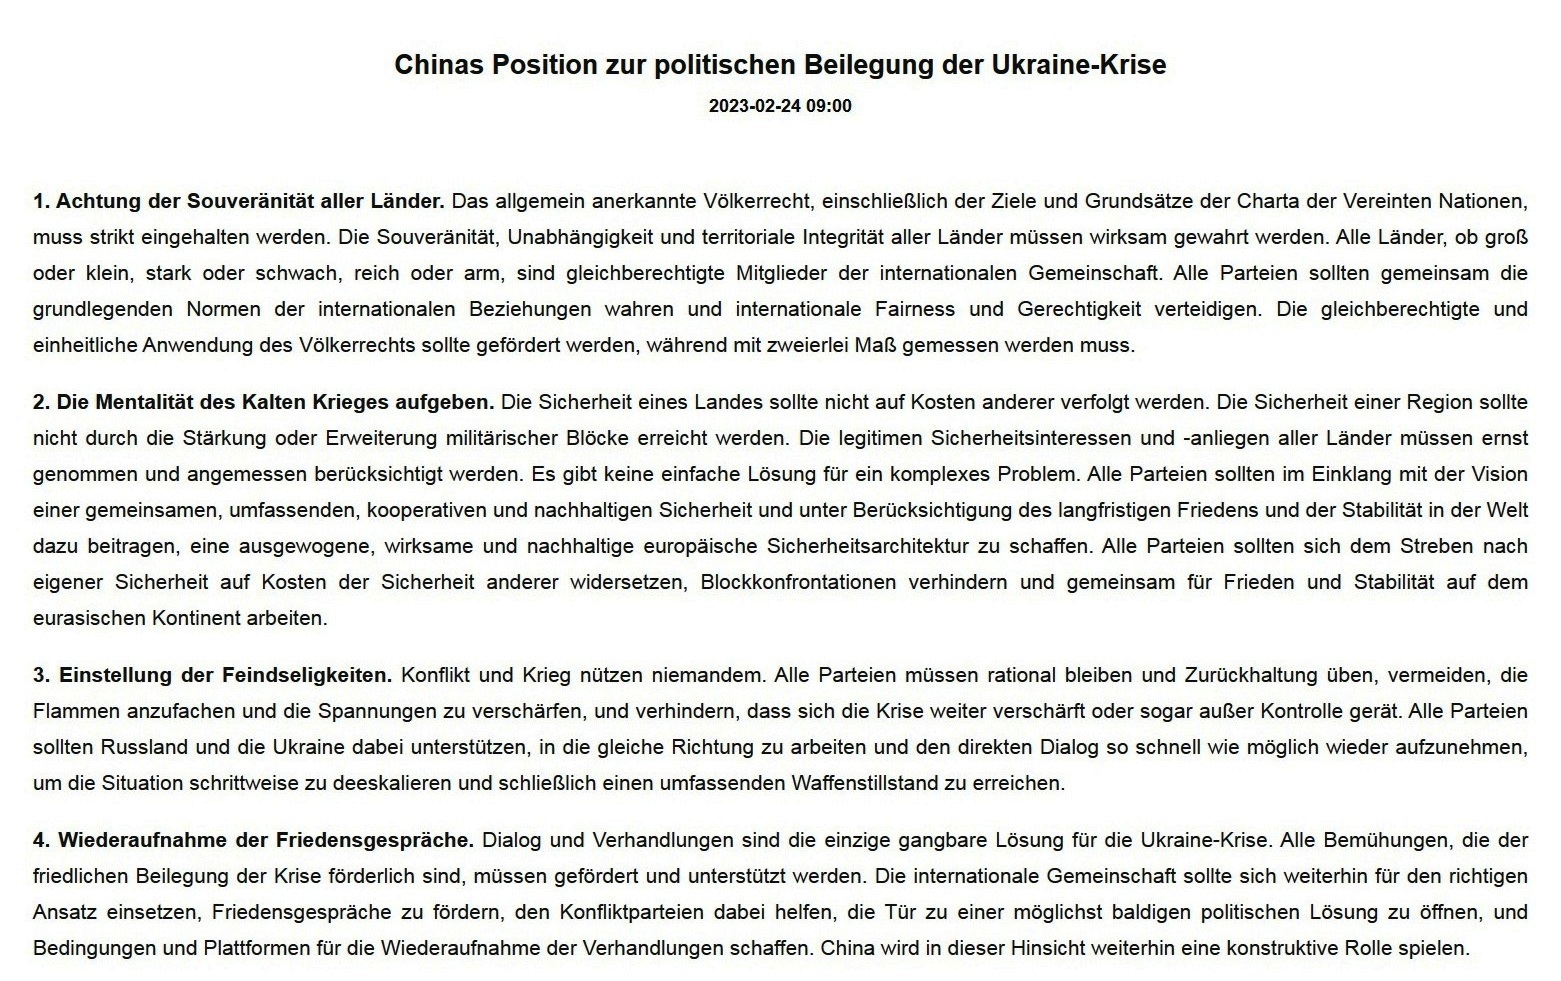 Außenministerium Chinas veröffentlicht Dokument über Chinas Position zur politischen Lösung der Ukraine-Krise - Link: https://www.fmprc.gov.cn/eng/zxxx_662805/202302/t20230224_11030713.html?spm=C98846262907.PT3RXyzGyJv6.0.0 - Abschnitt 1